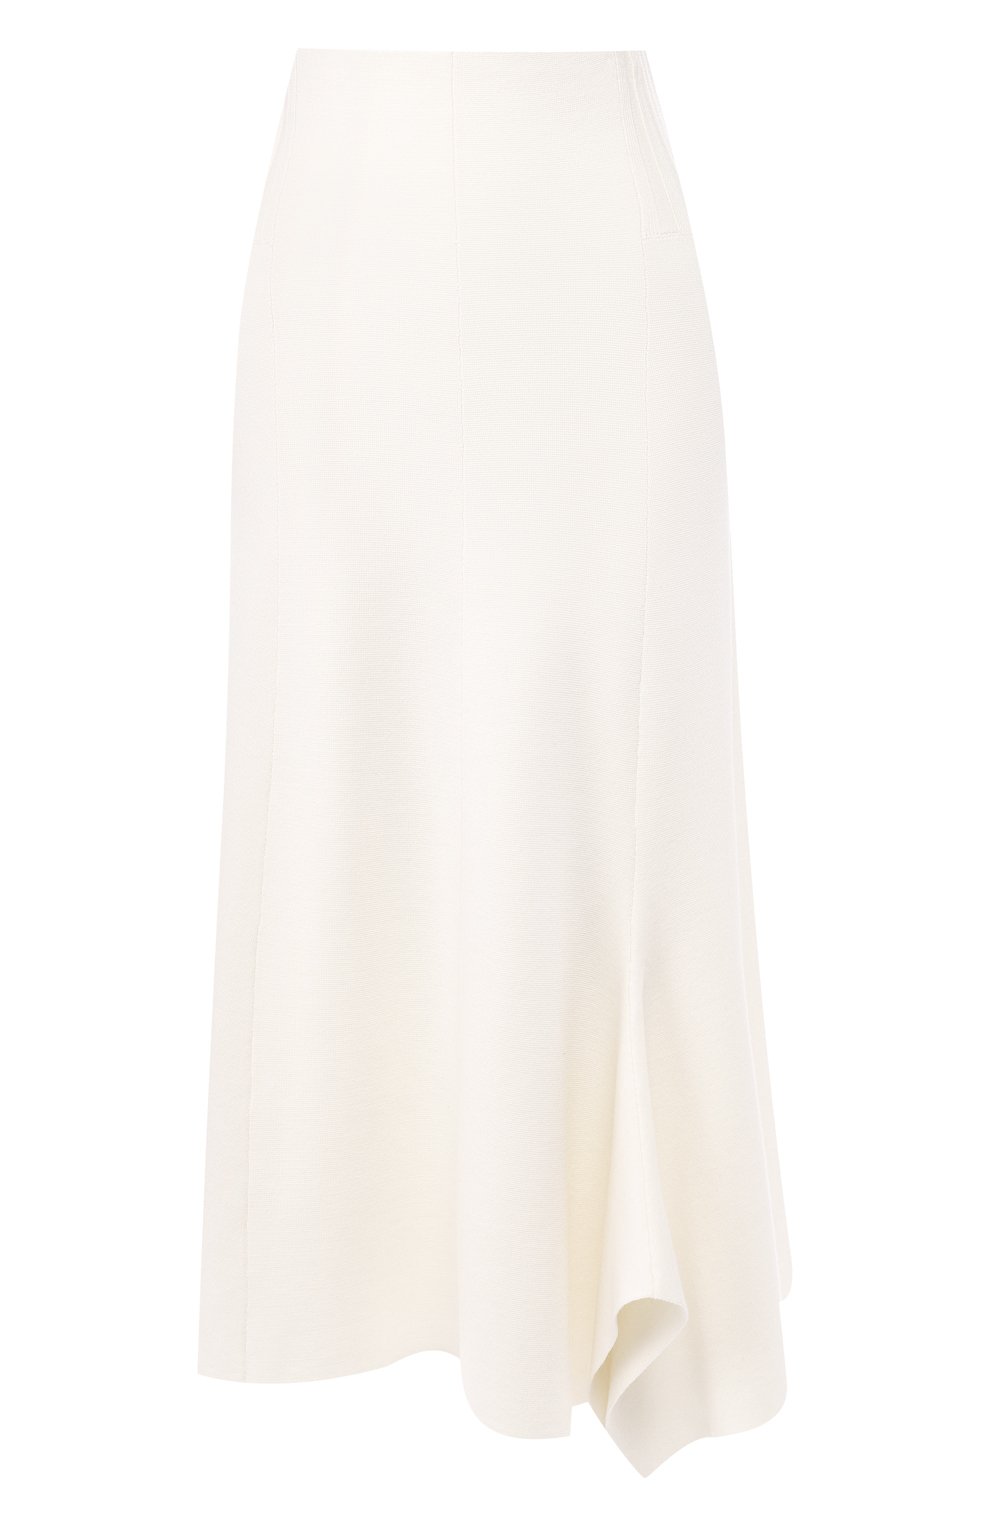 Шерстяная юбка Dorothee Schumacher белого цвета